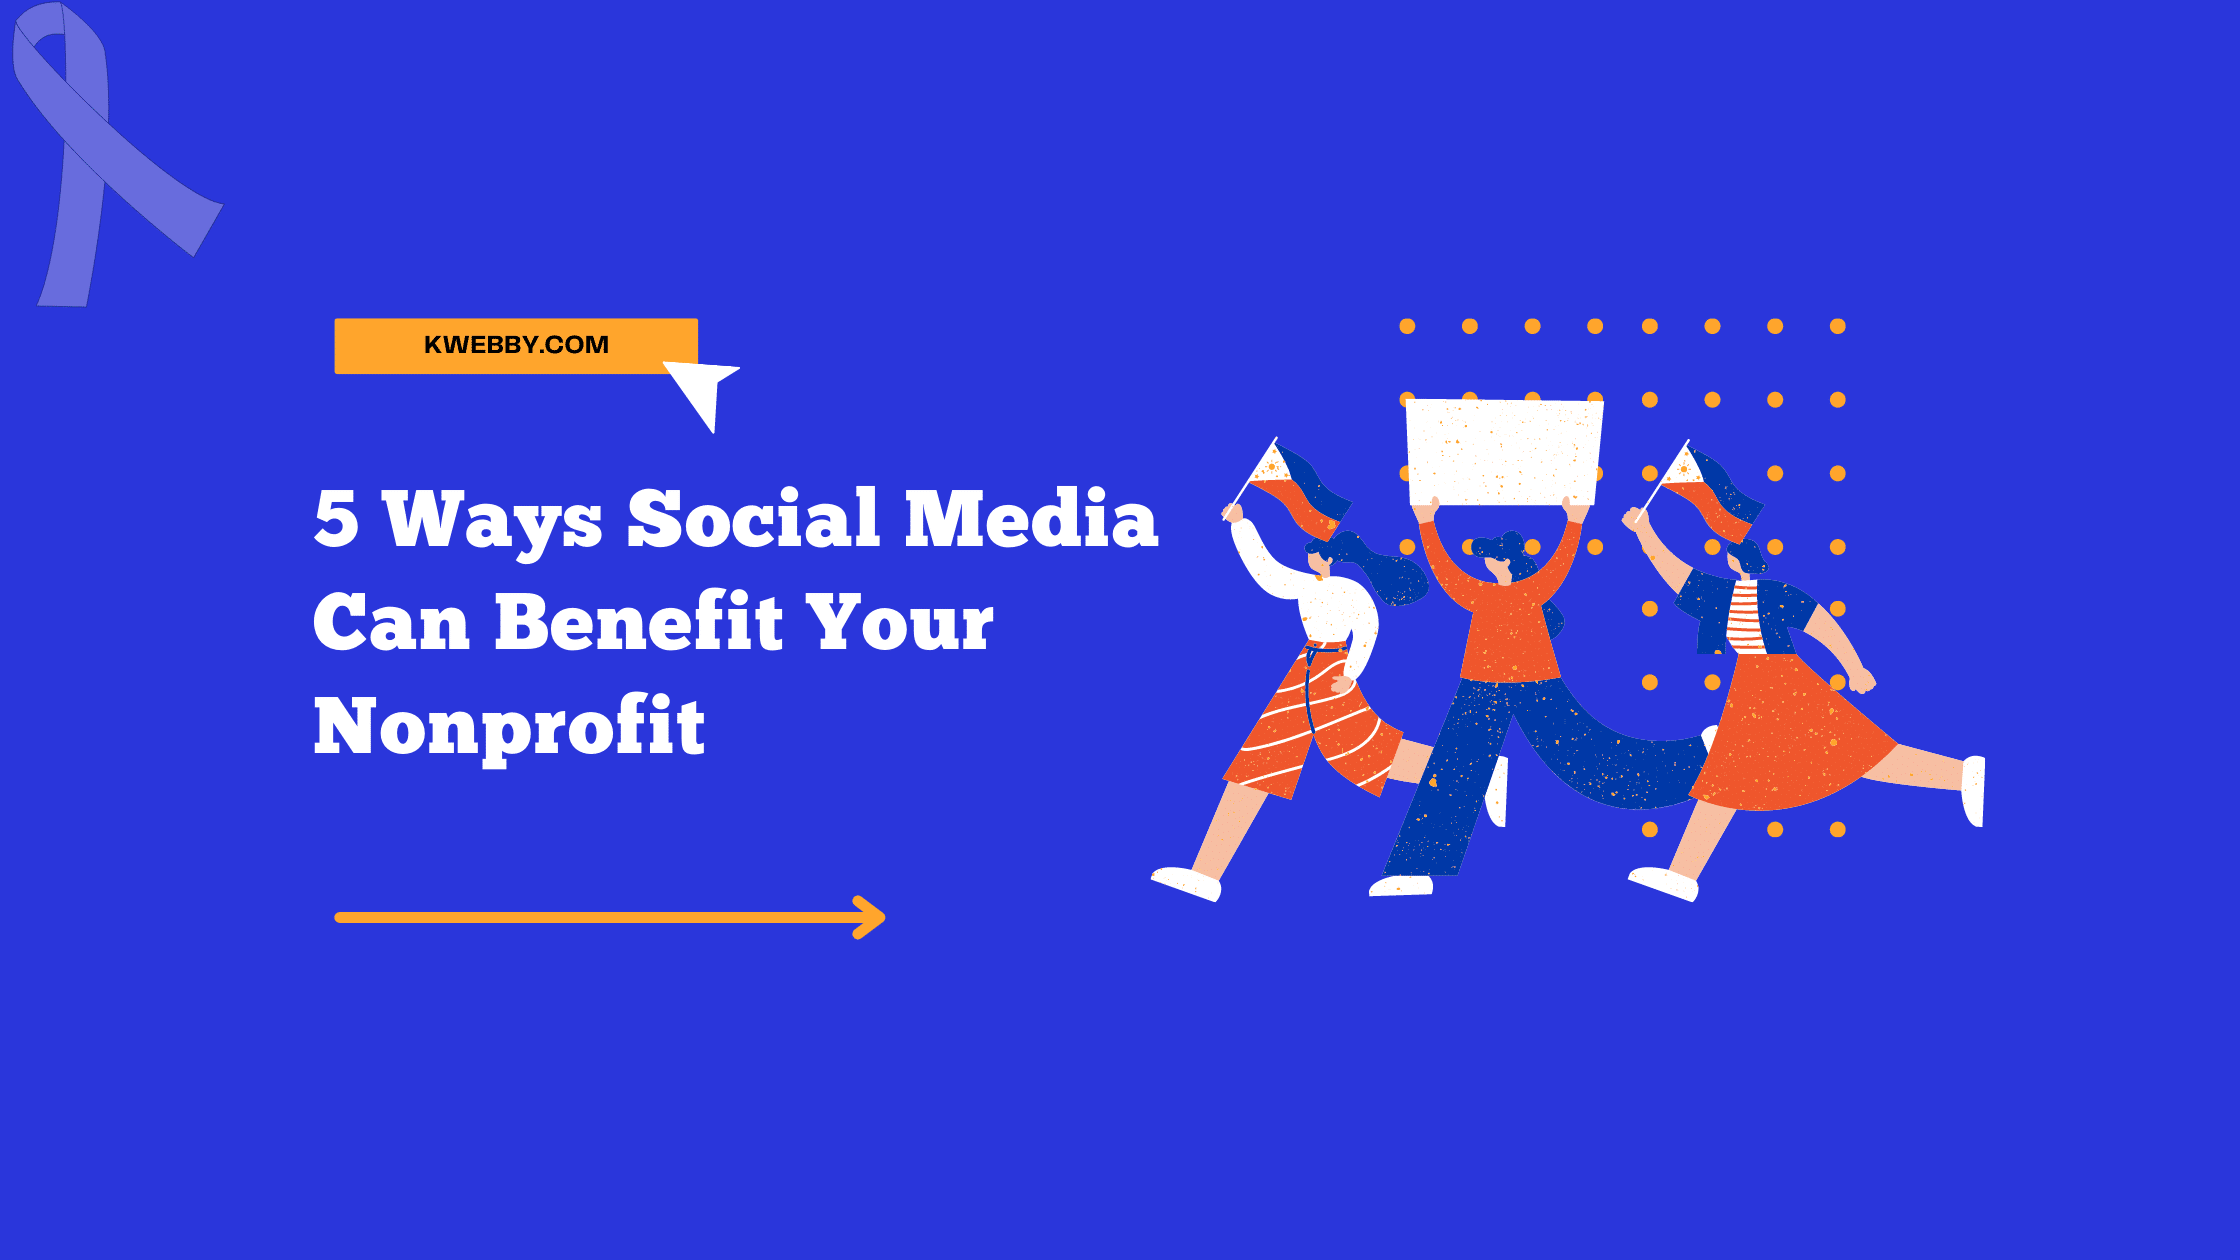 Nonprofits and Social Media: 5 Ways Social Media Can Benefit Your Nonprofit